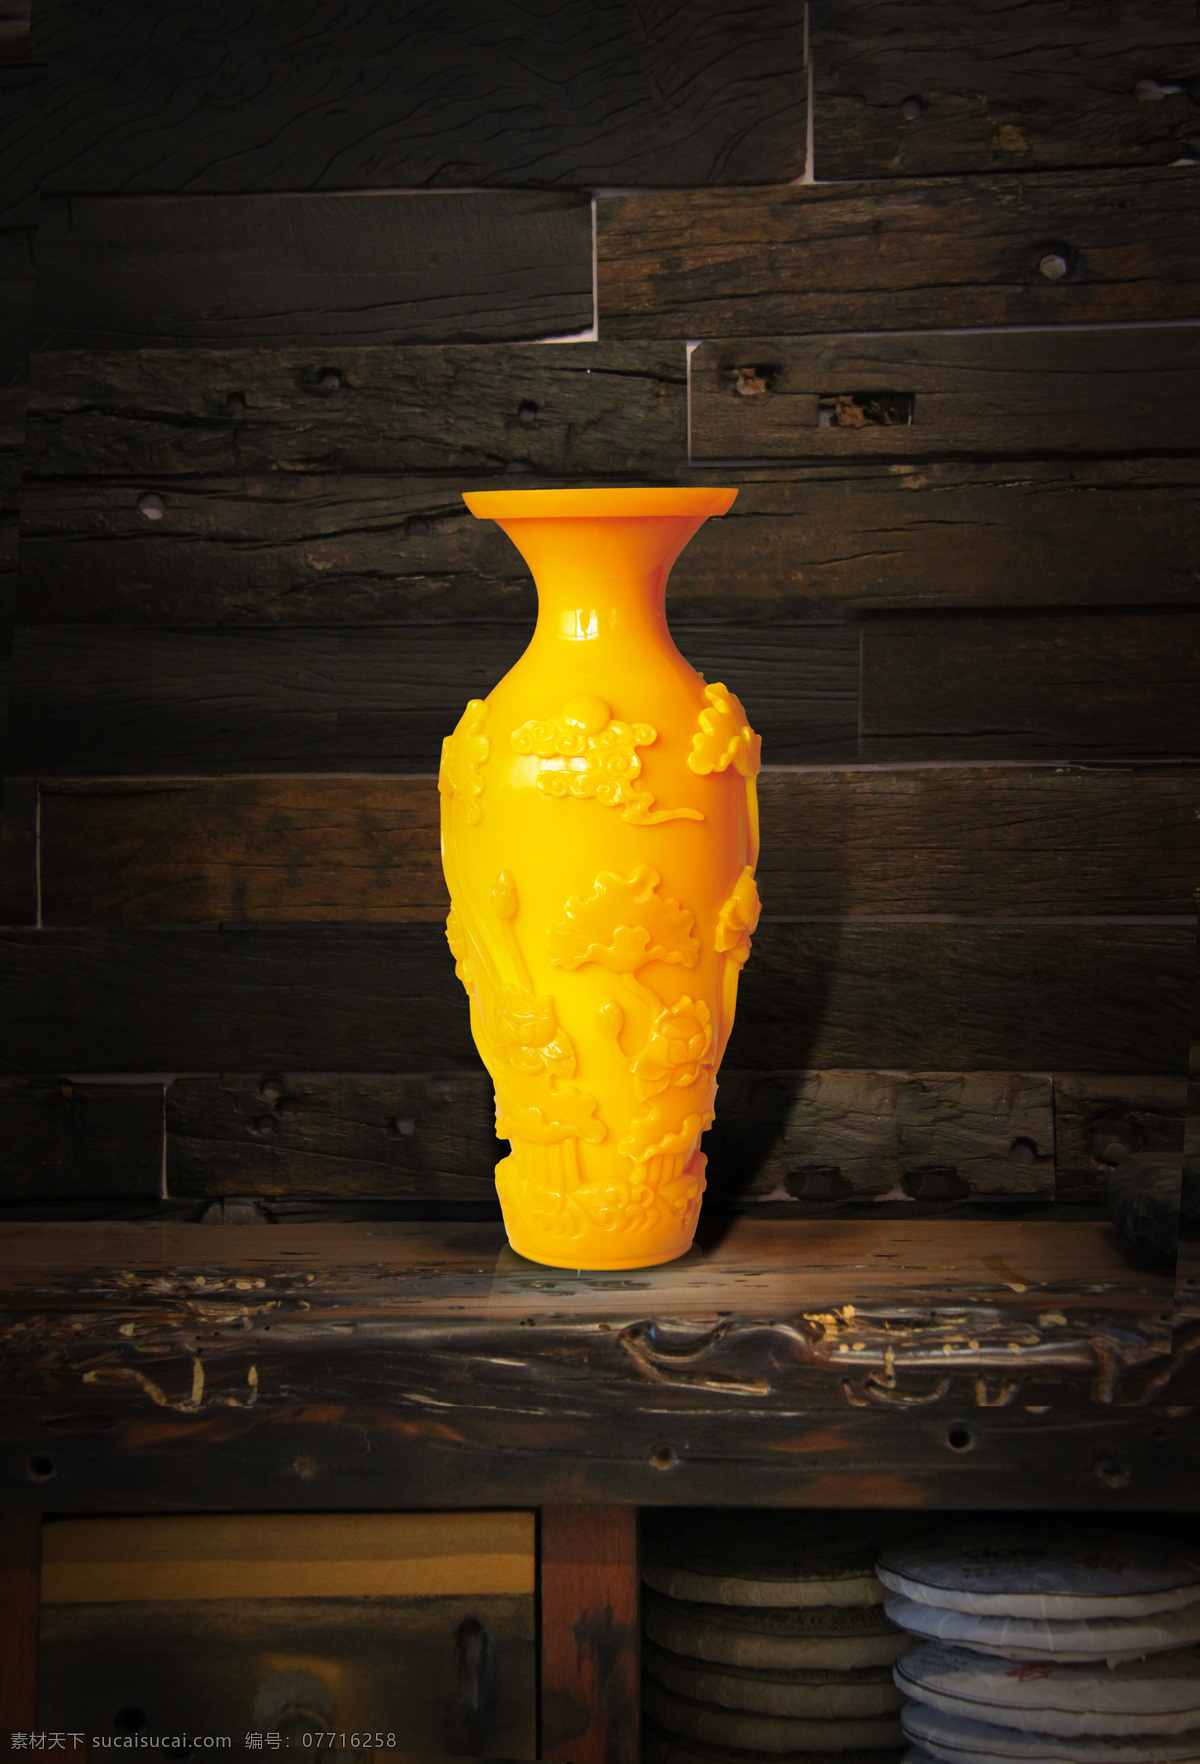 鸡油黄 艺术品 黄金 雕刻 传统艺术 拍卖 拍照 雕刻艺术 文化传承 文化艺术 美术绘画